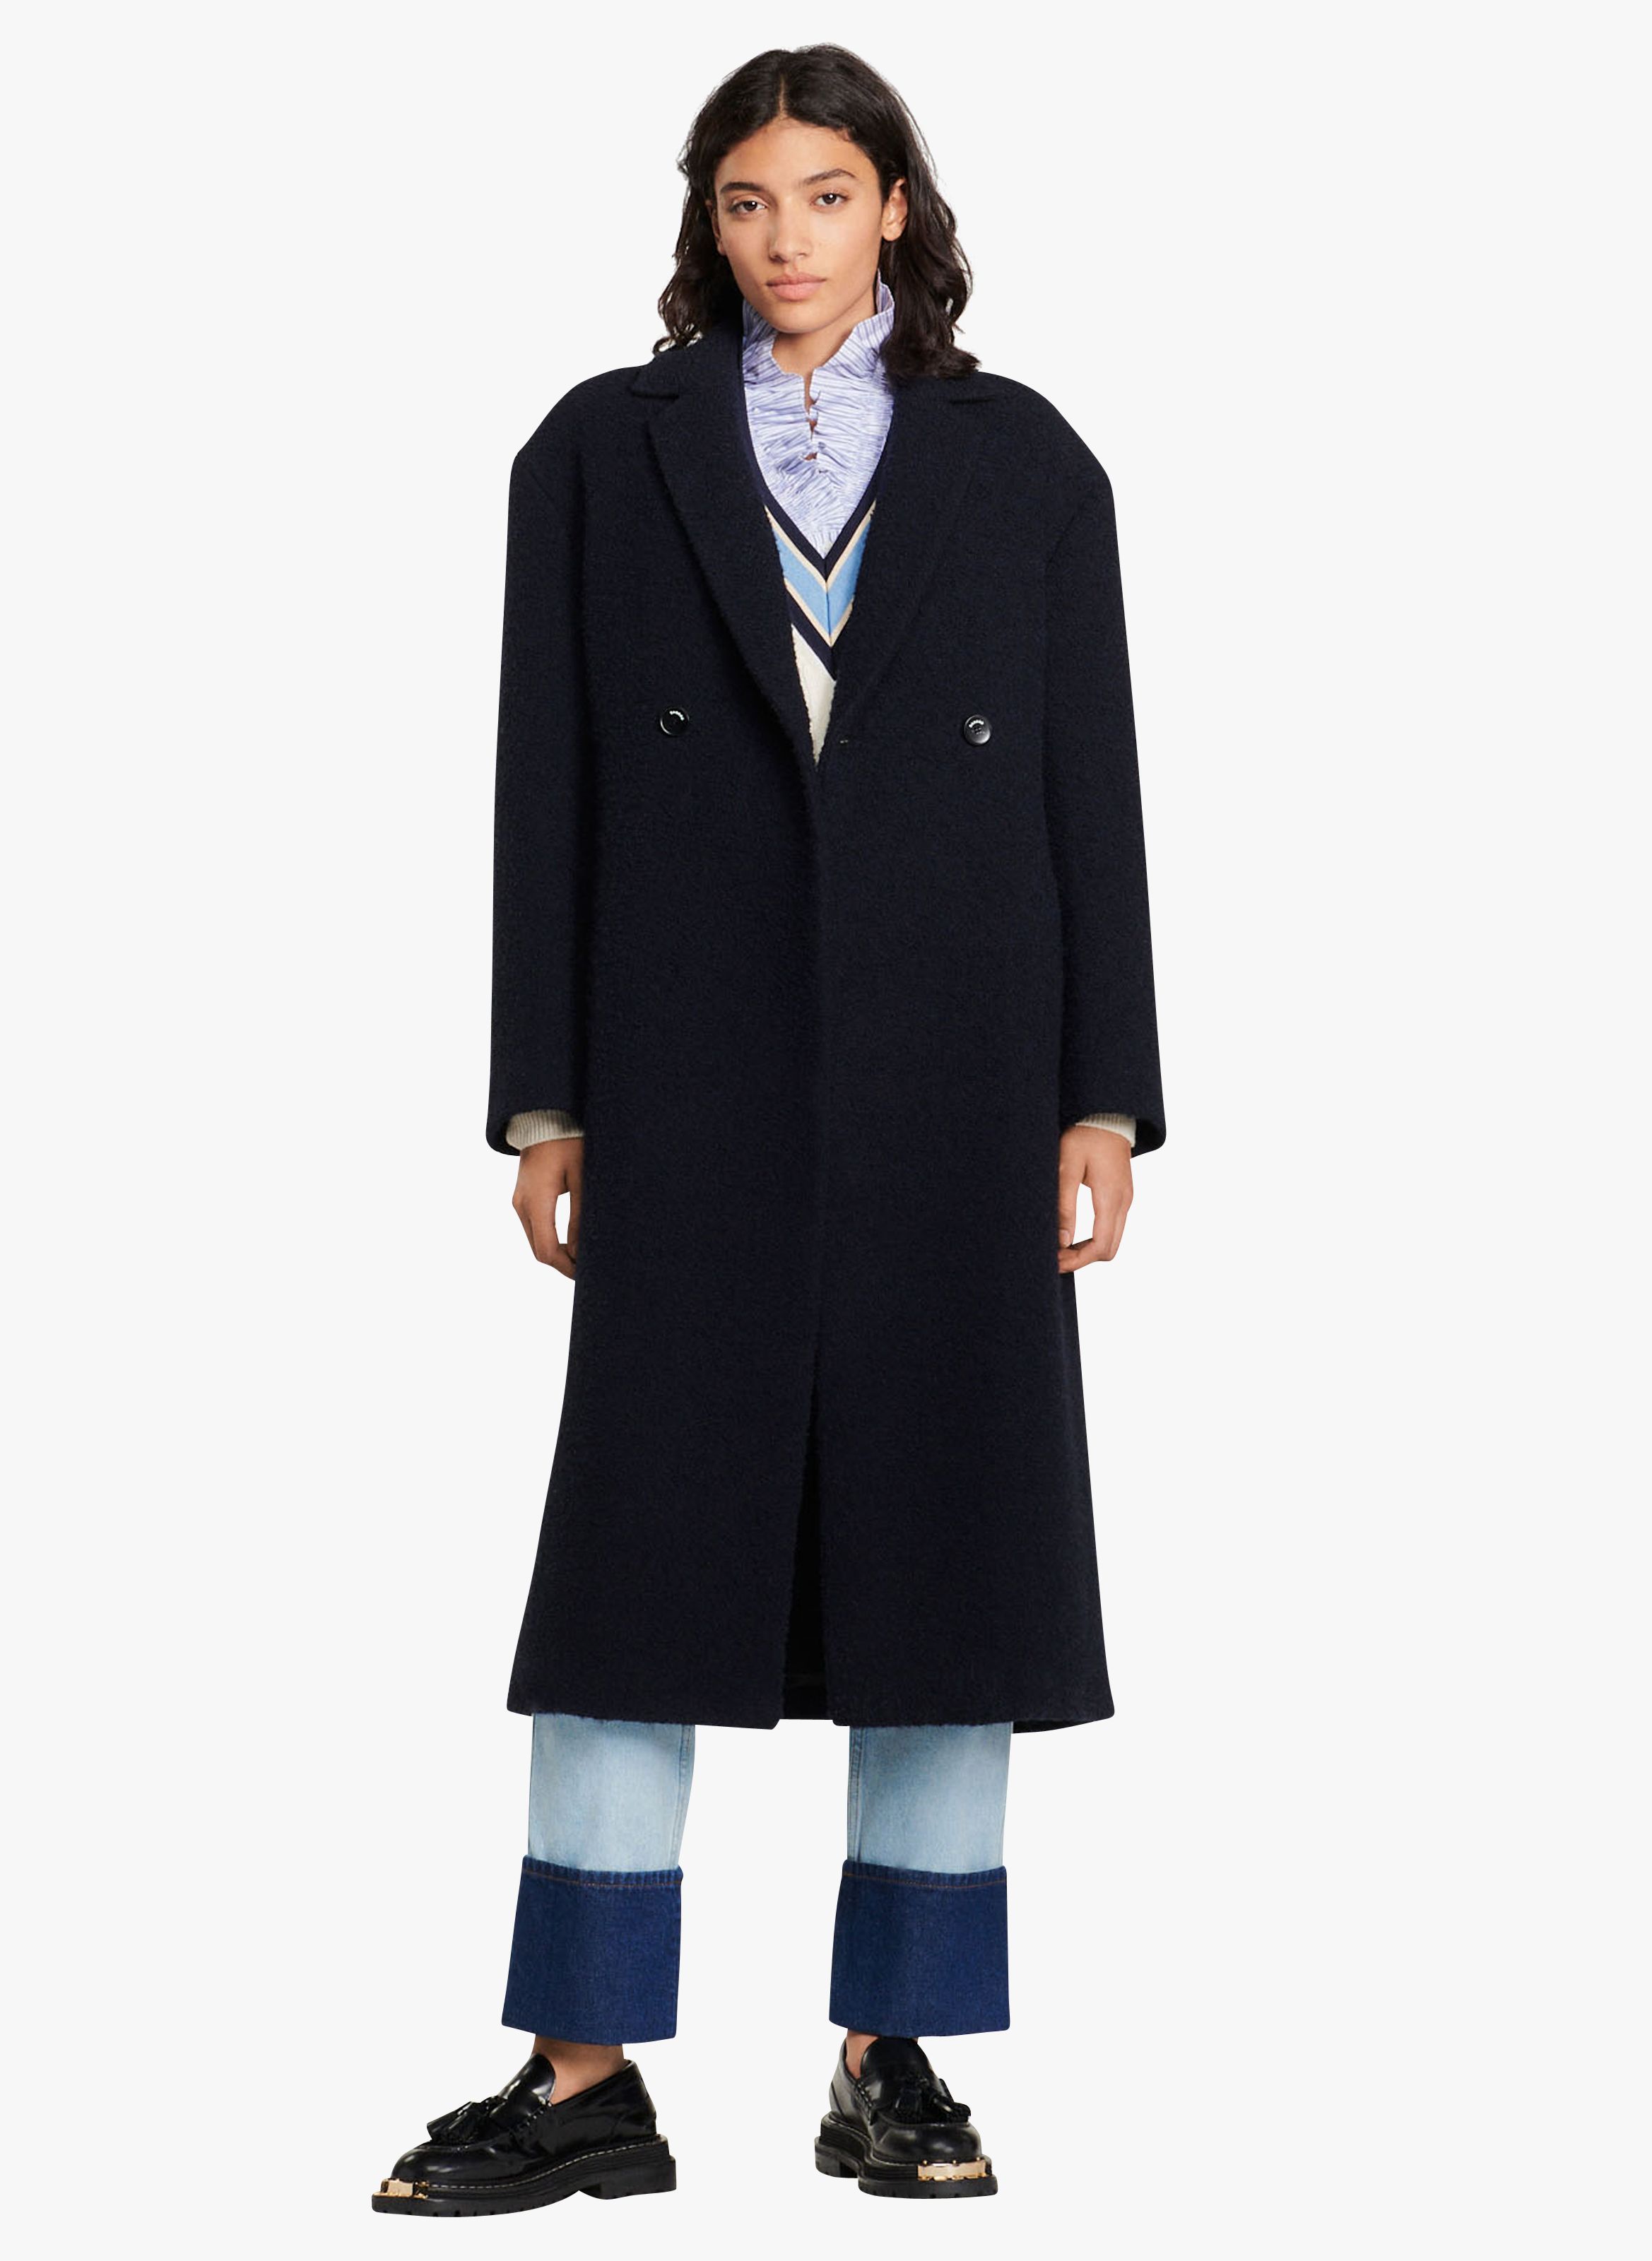 Overcoat Harris Wharf London en coloris Noir Femme Vêtements Manteaux Manteaux longs et manteaux dhiver 